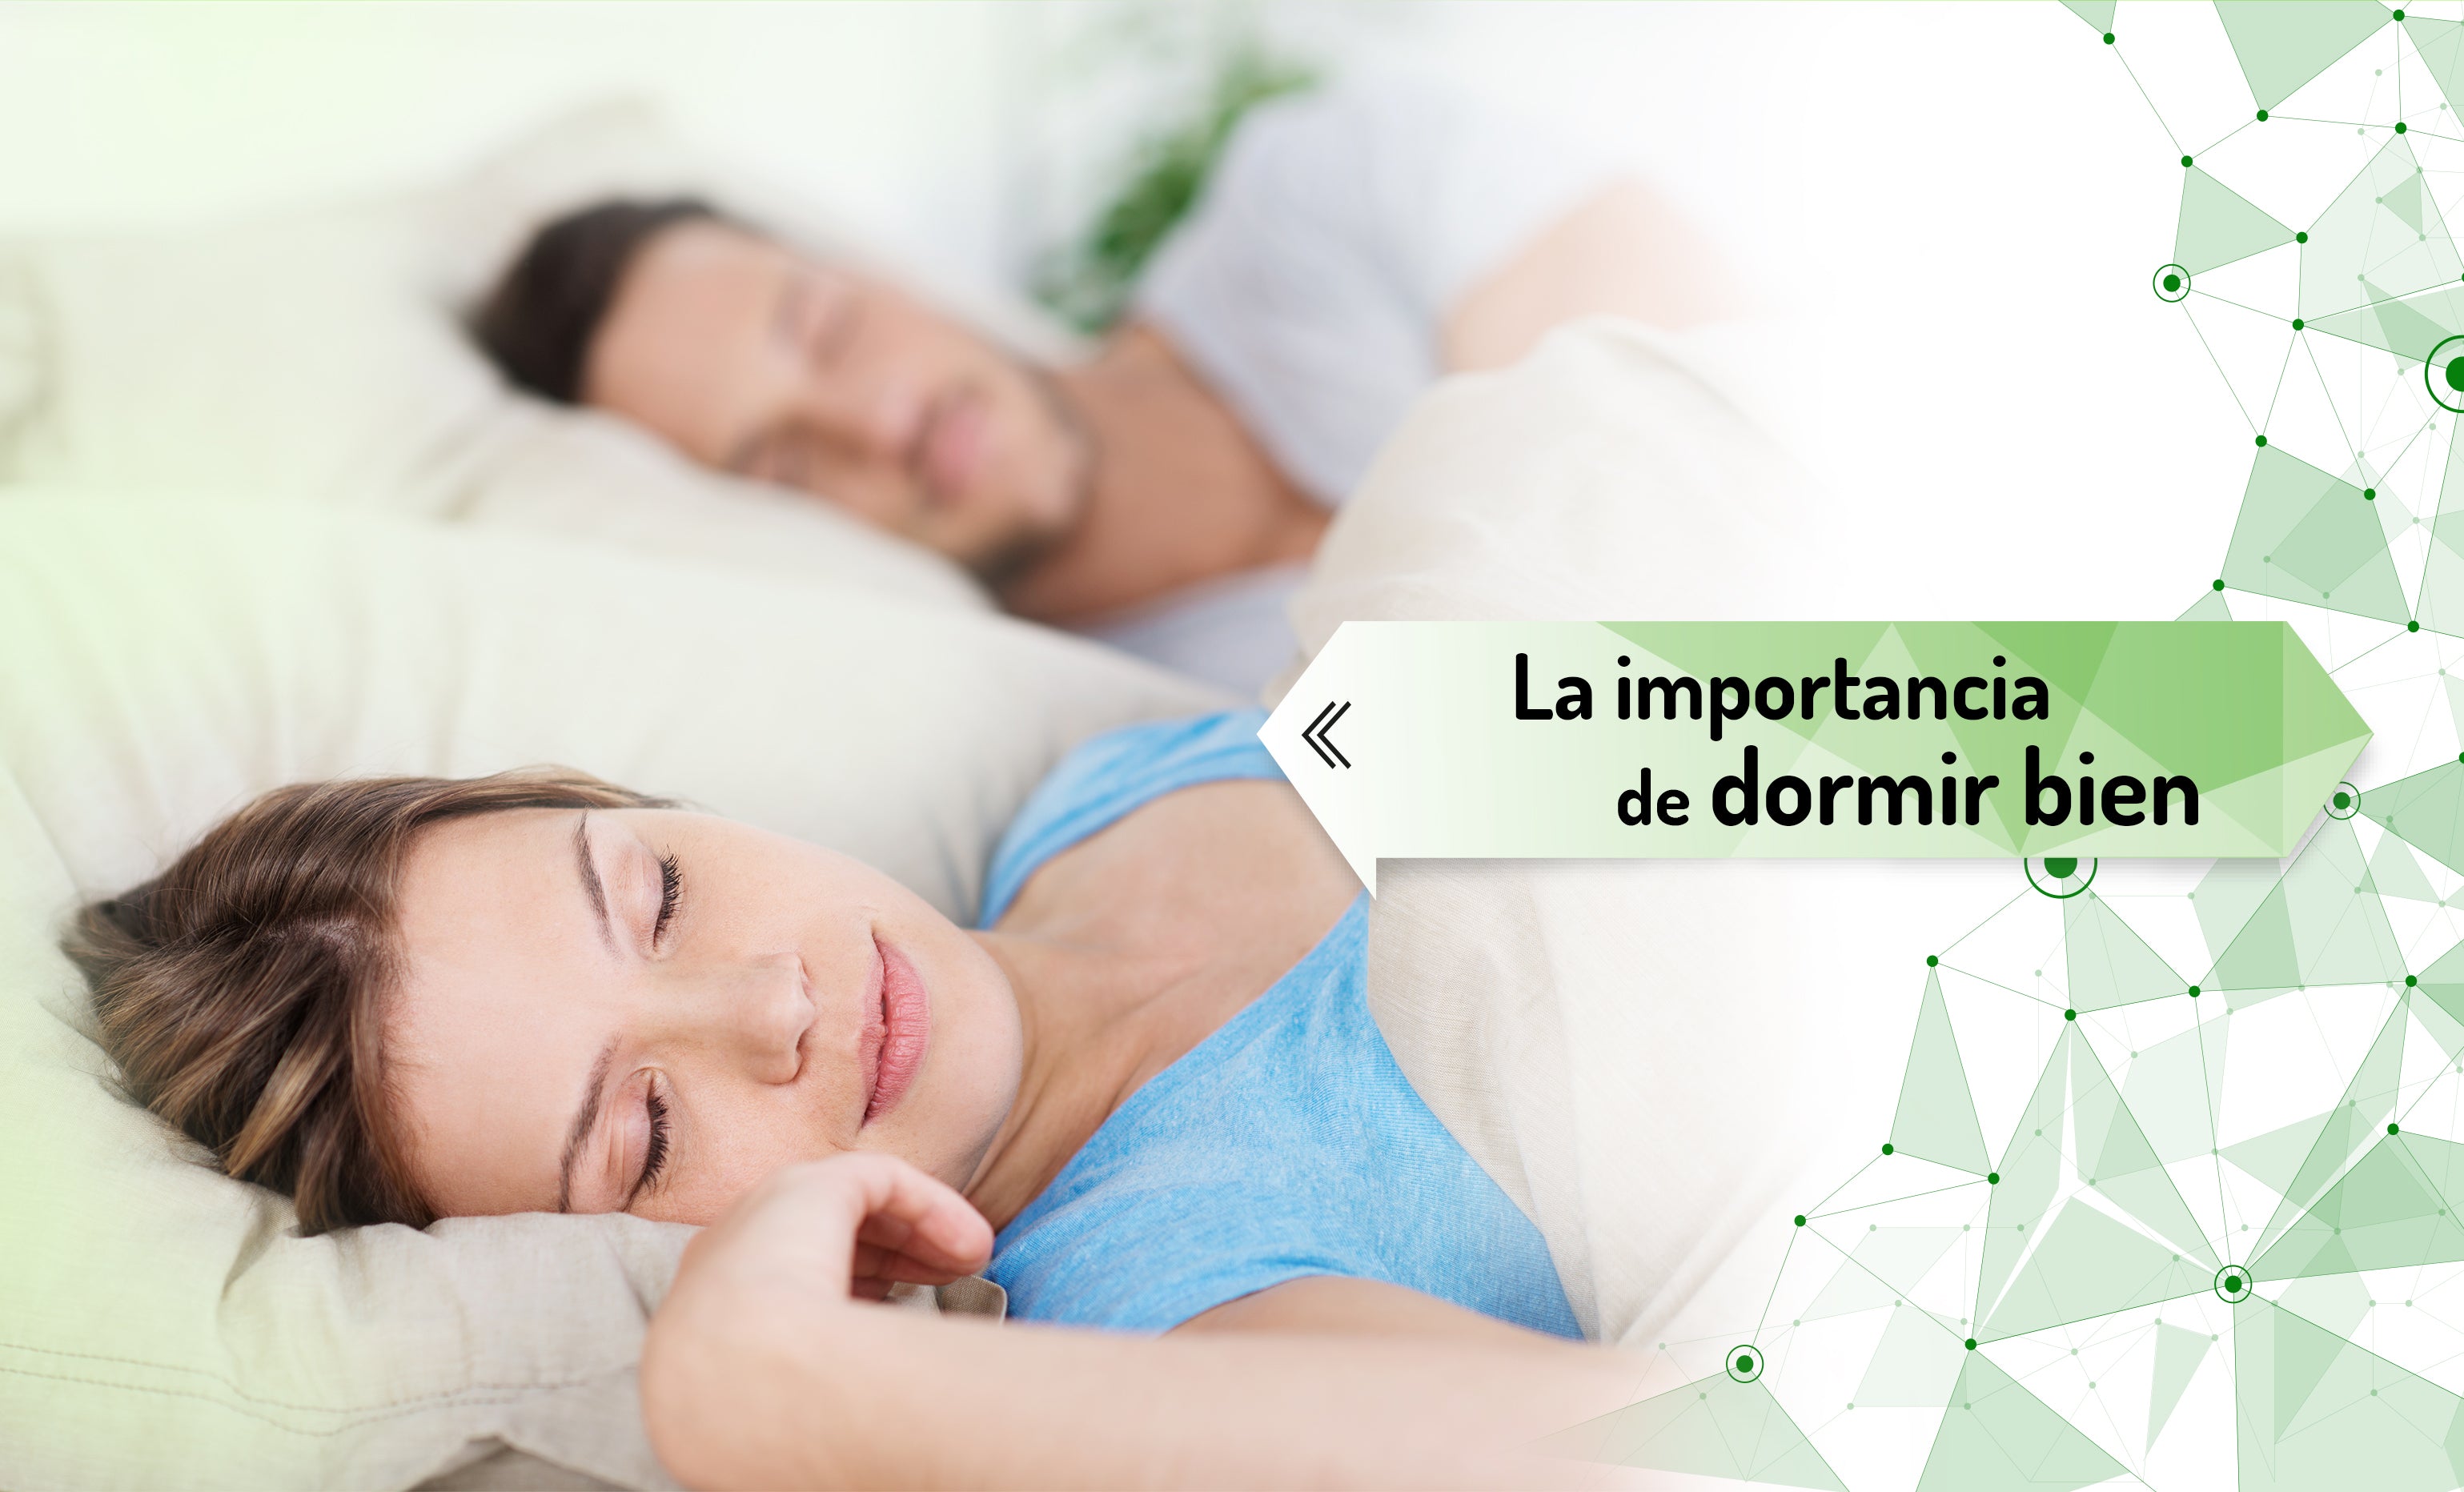 Universidad de Guadalajara on X: ¿Sabías que dormir las horas que tu  cuerpo necesita te ayuda a tener una mejor calidad de vida? 😴 Conoce los  beneficios que obtienes al dormir bien.